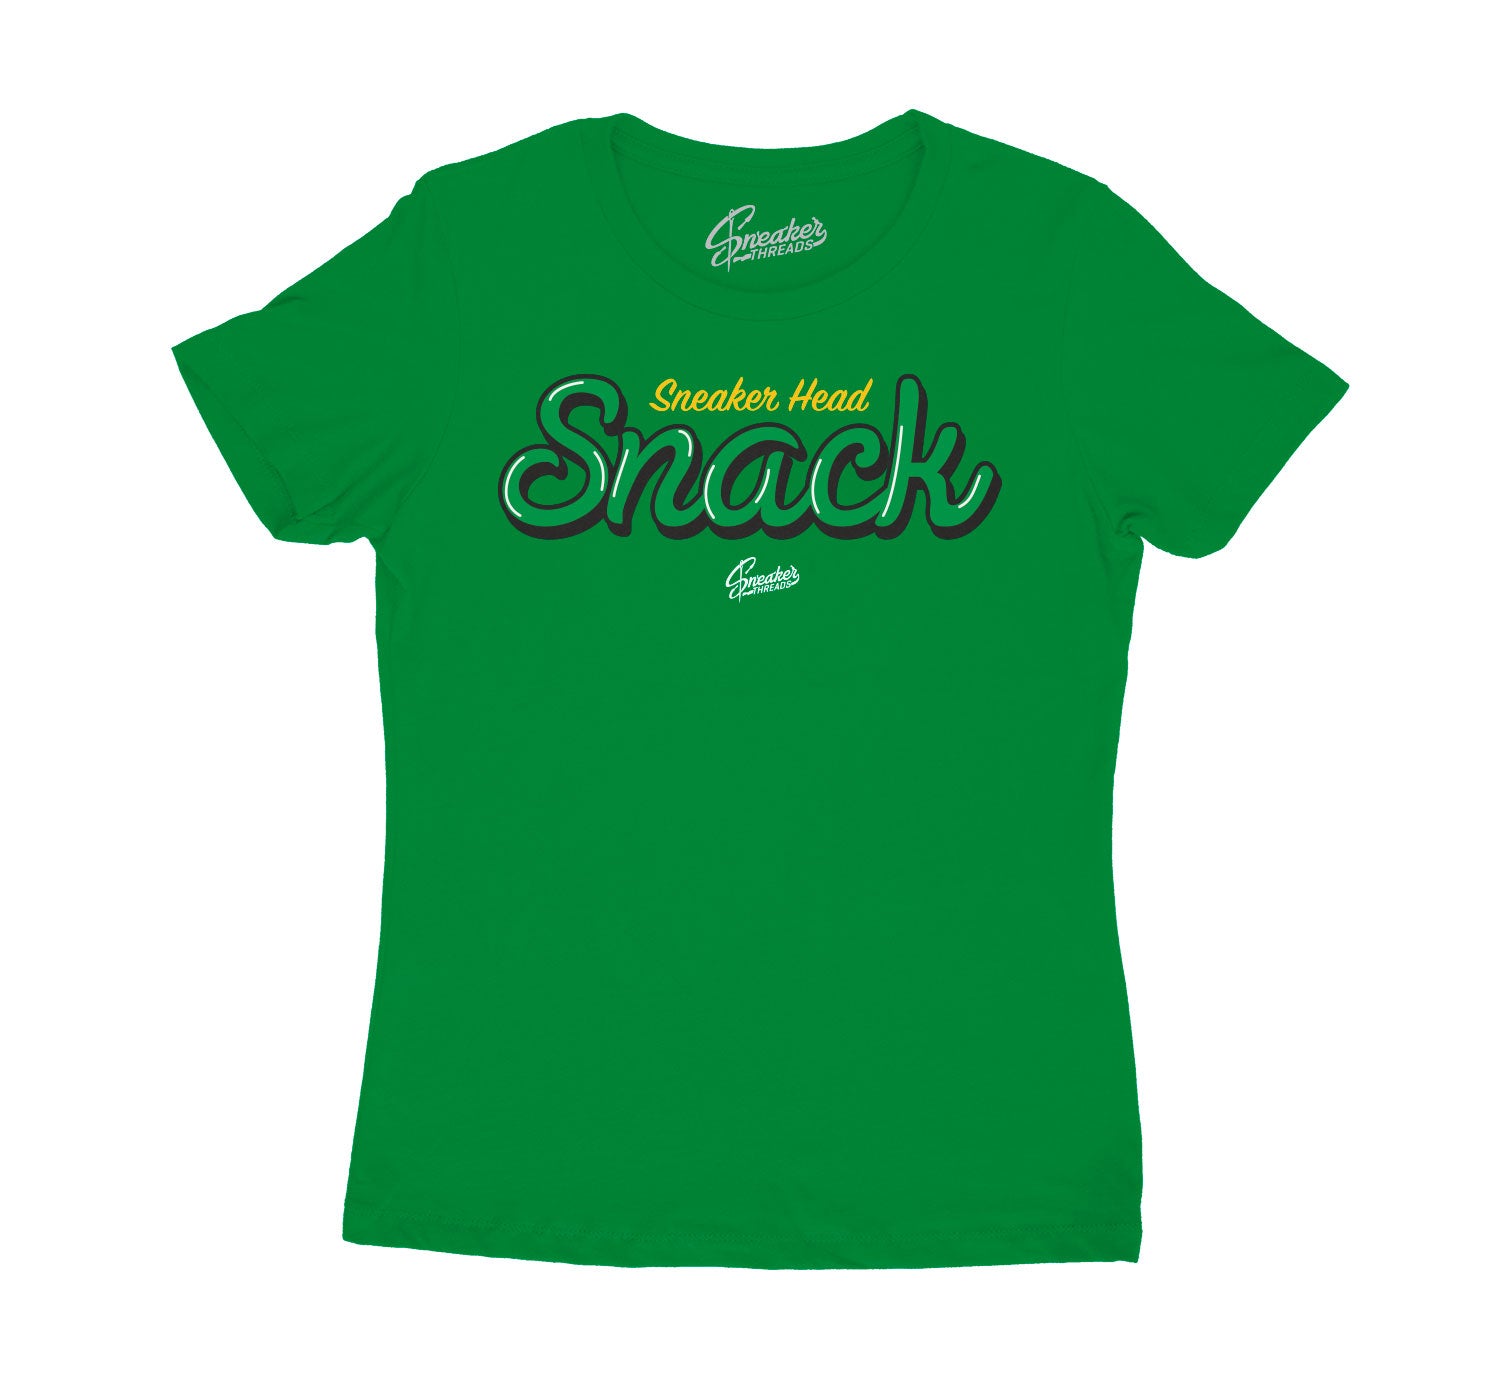 Jordan 10 Seattle women's shirt to look like snack